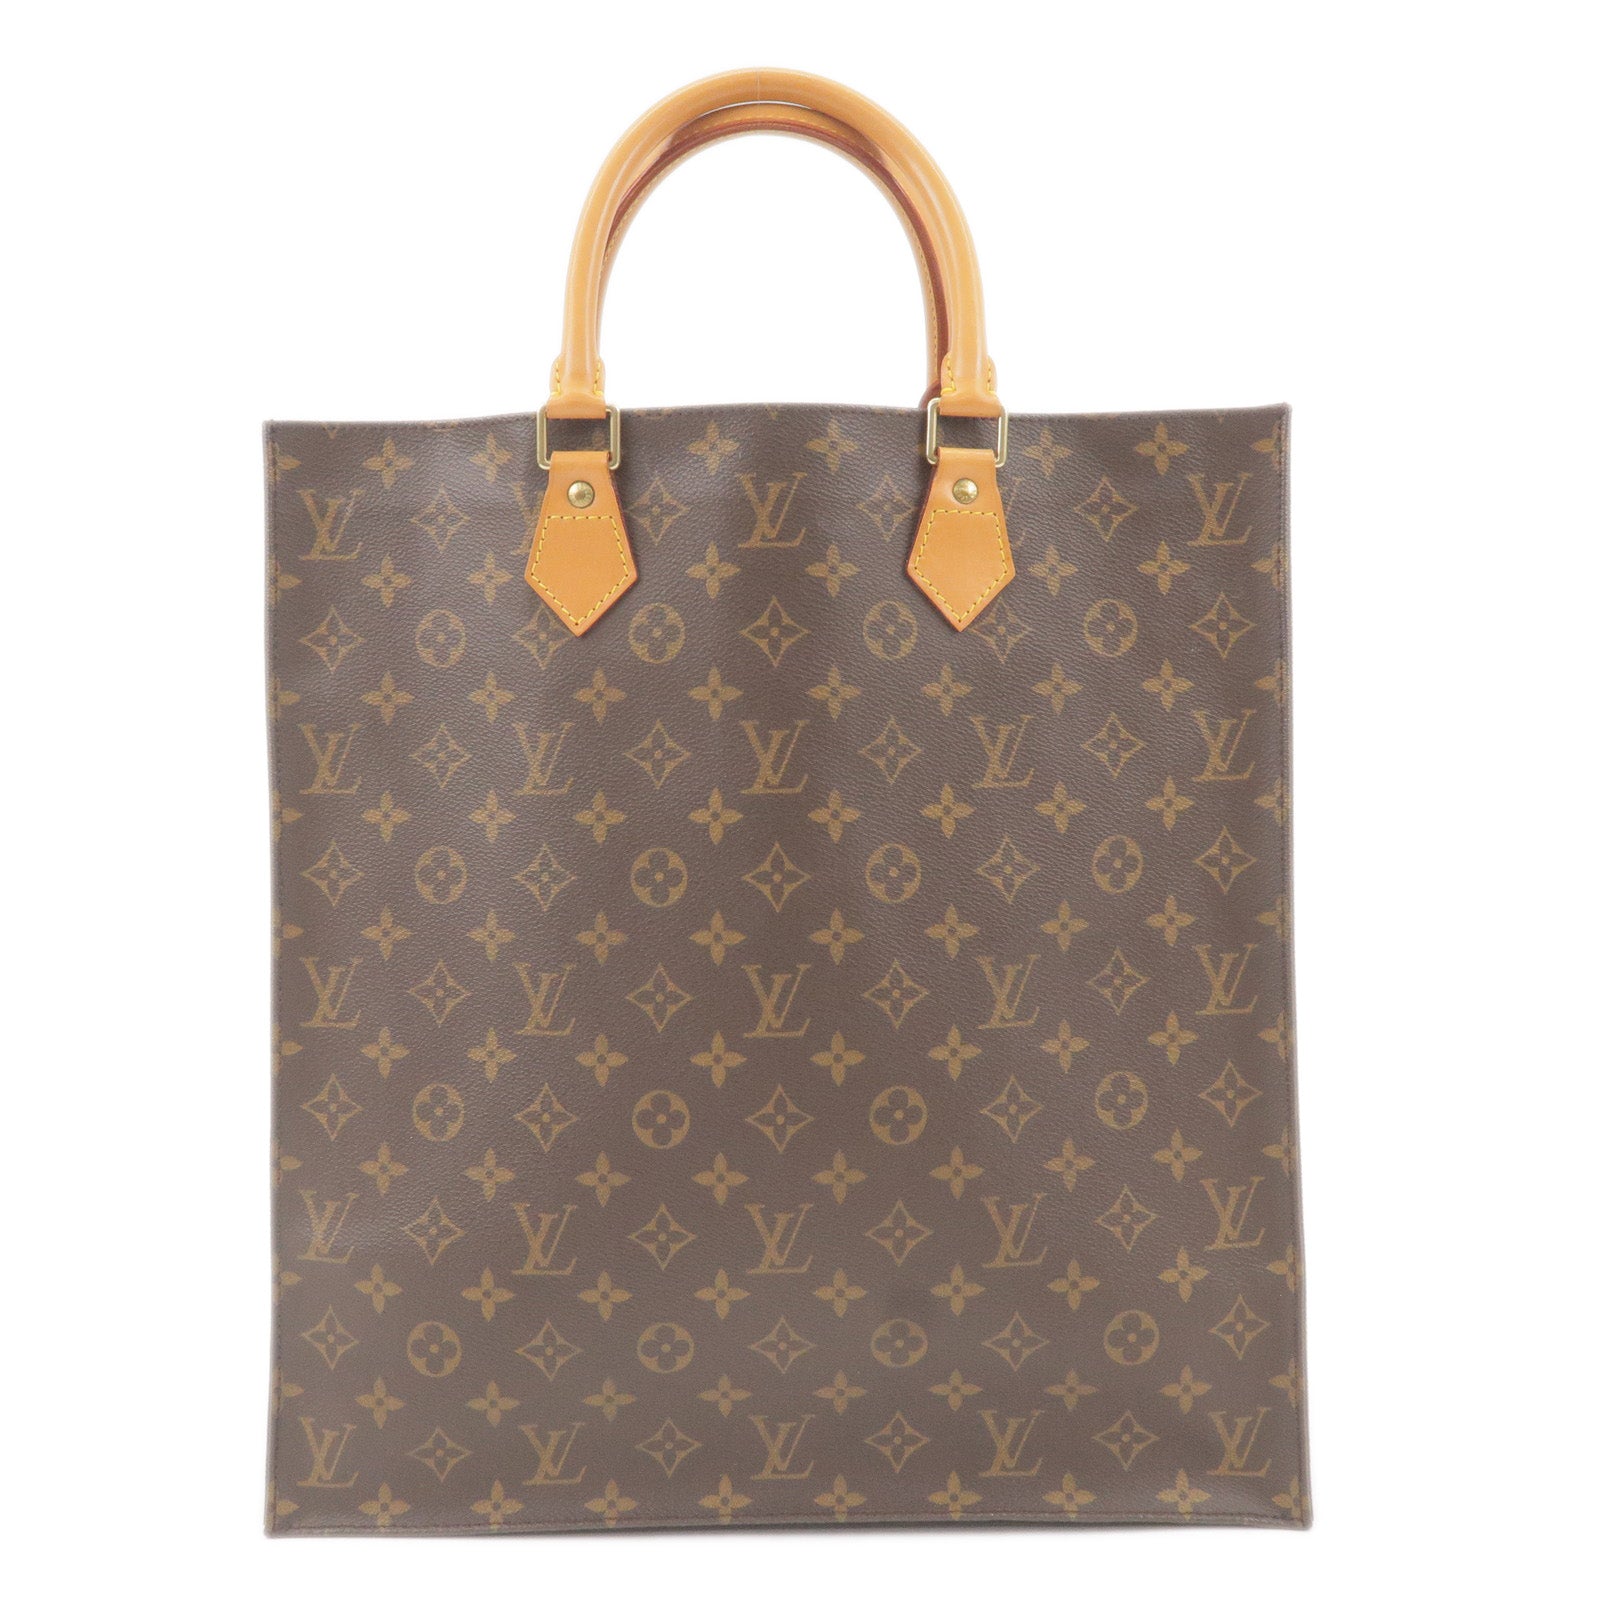 Plat - Sac - Tote - Hand - Bag - Vuitton - Louis Vuitton Monogram Canvas  Shoulder Strap 120cm 1.6cm - Louis - M51140 – dct - ep_vintage luxury Store  - Monogram - Bag